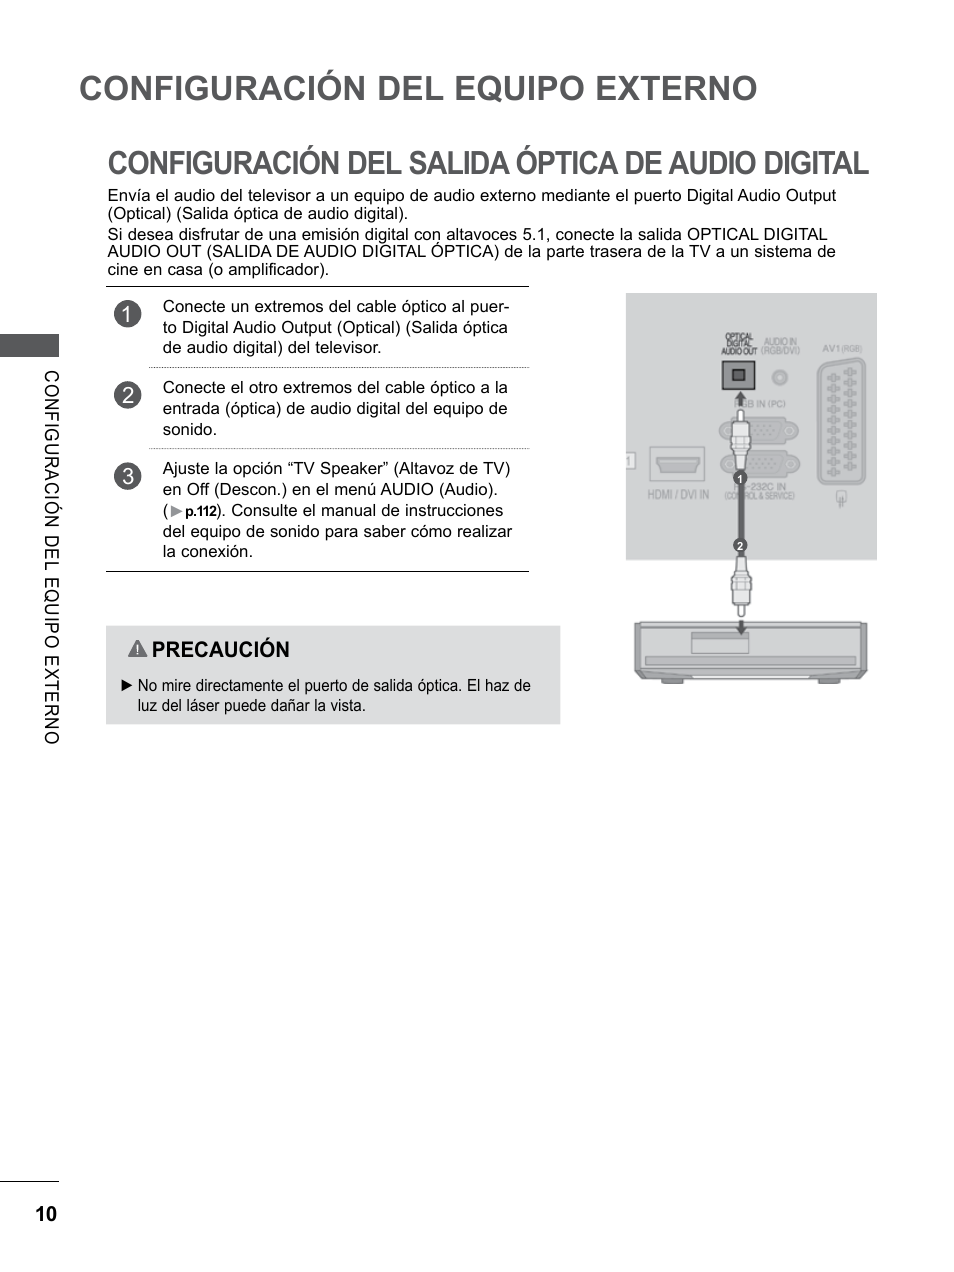 Configuración del salida óptica de audio digital, Configuración del salida óptica de, Audio digital | Configuración del equipo externo | LG 55LE5300 Manual del usuario | Página 58 / 206